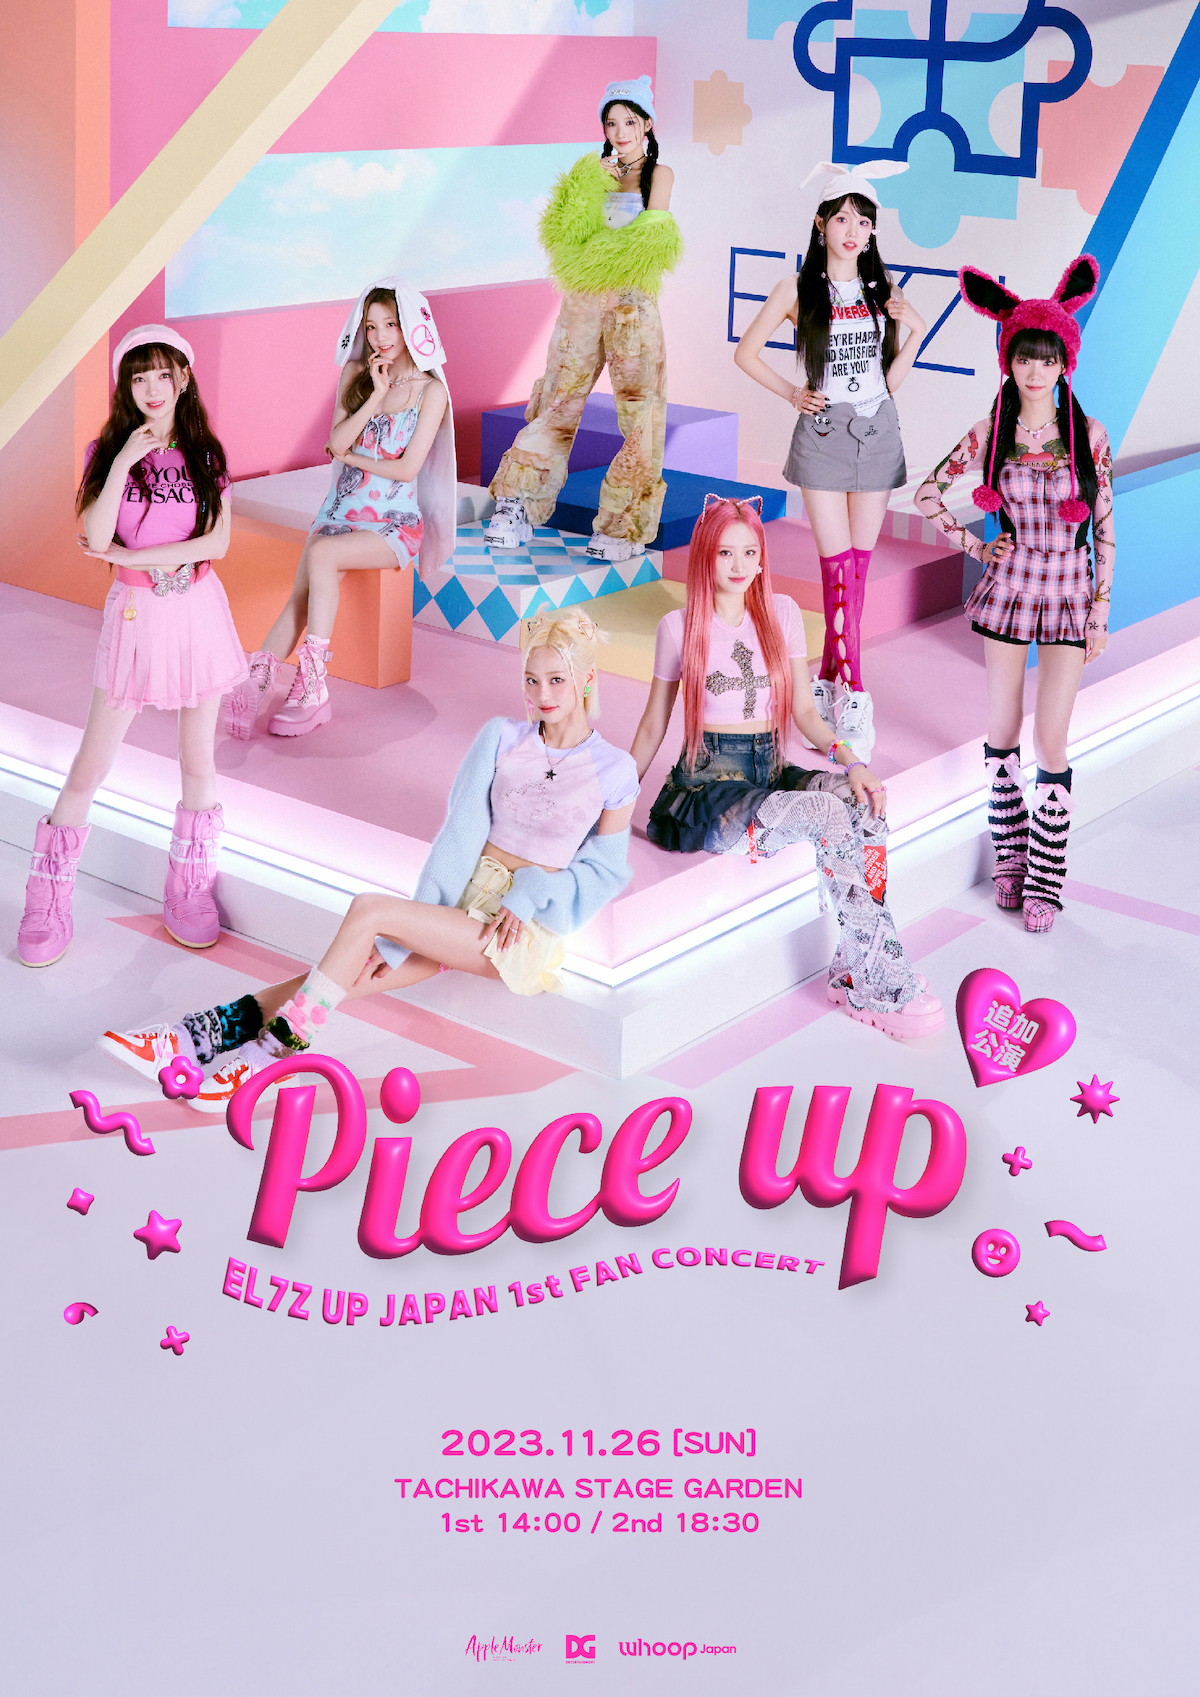 EL7Z UP JAPAN 1st FAN CONCERT ~Piece up~追加公演ポスター